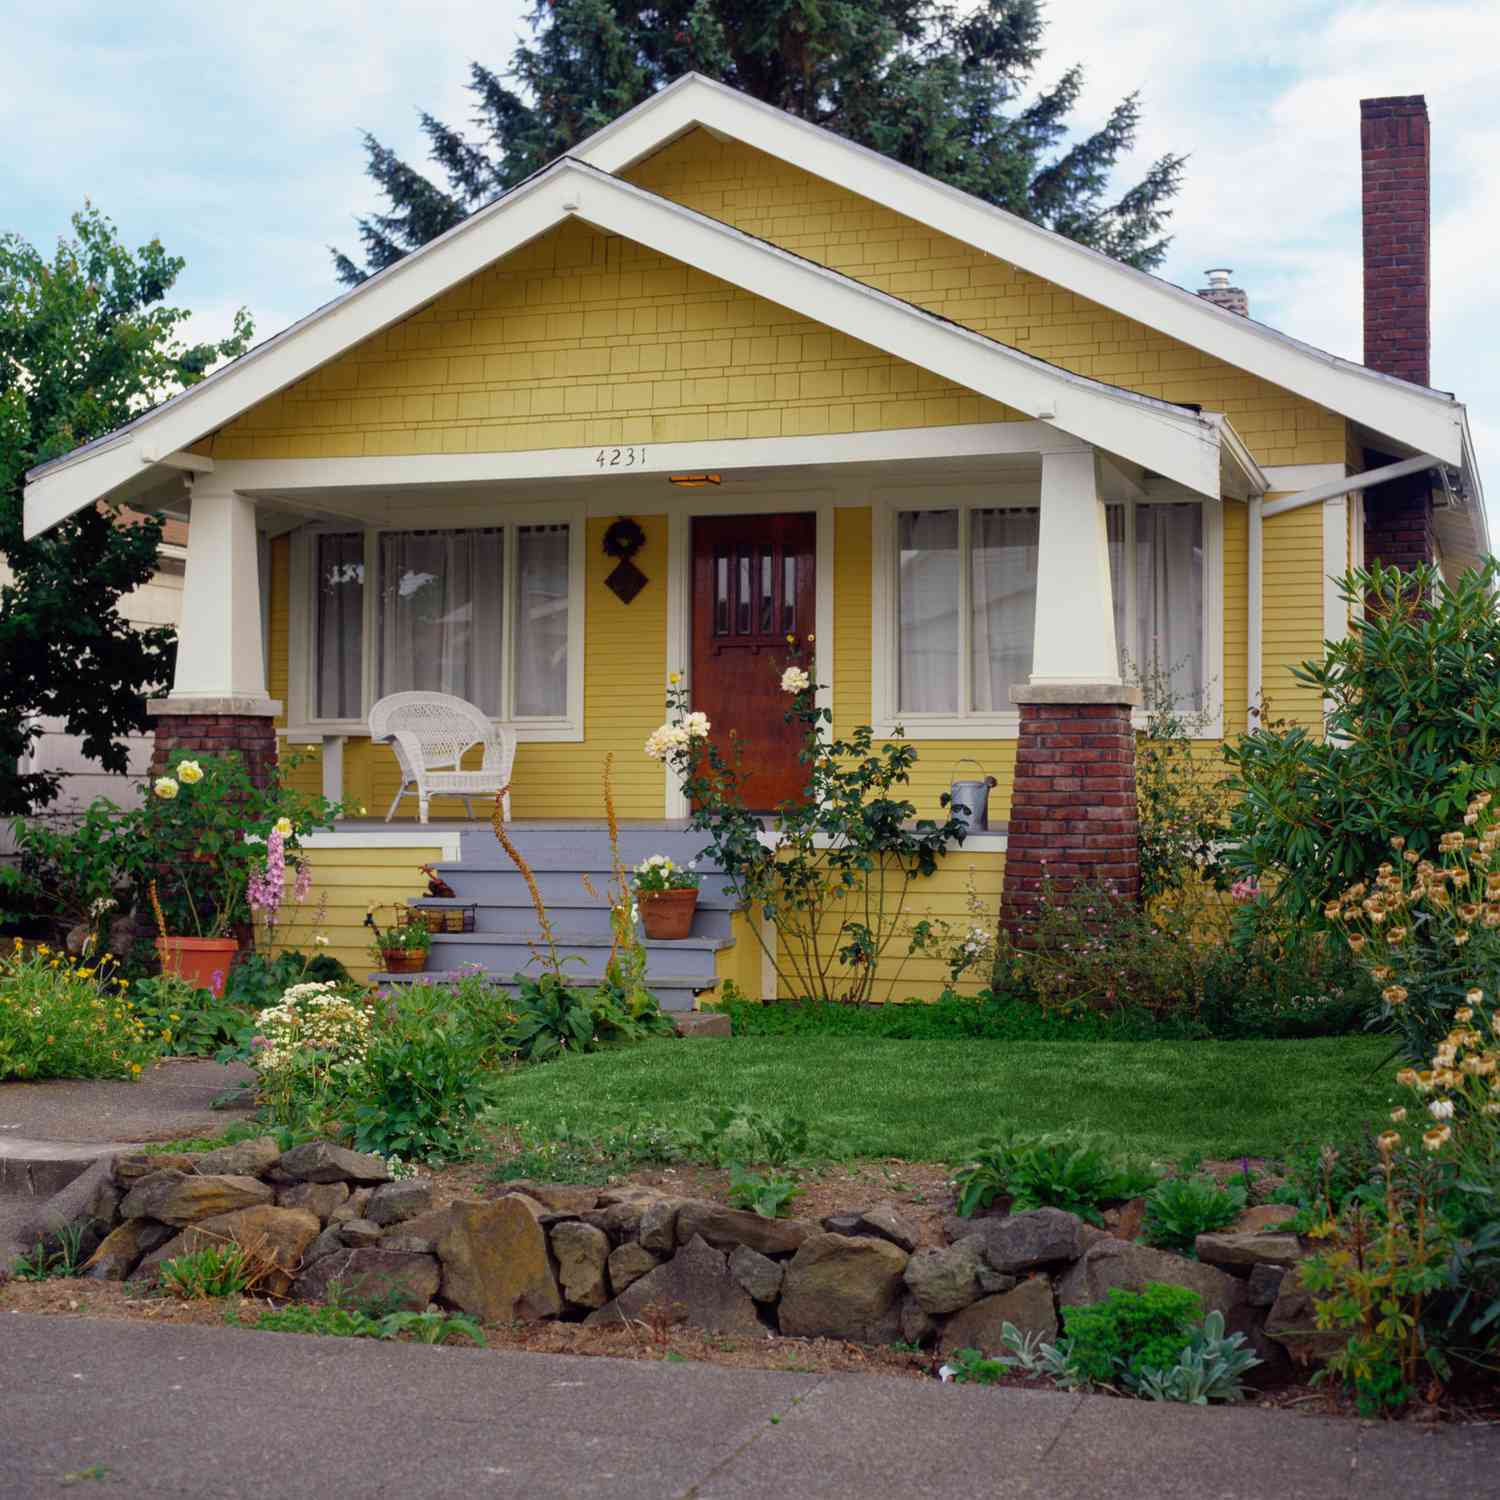 Casa em estilo bangalô amarelo com jardim, vista externa